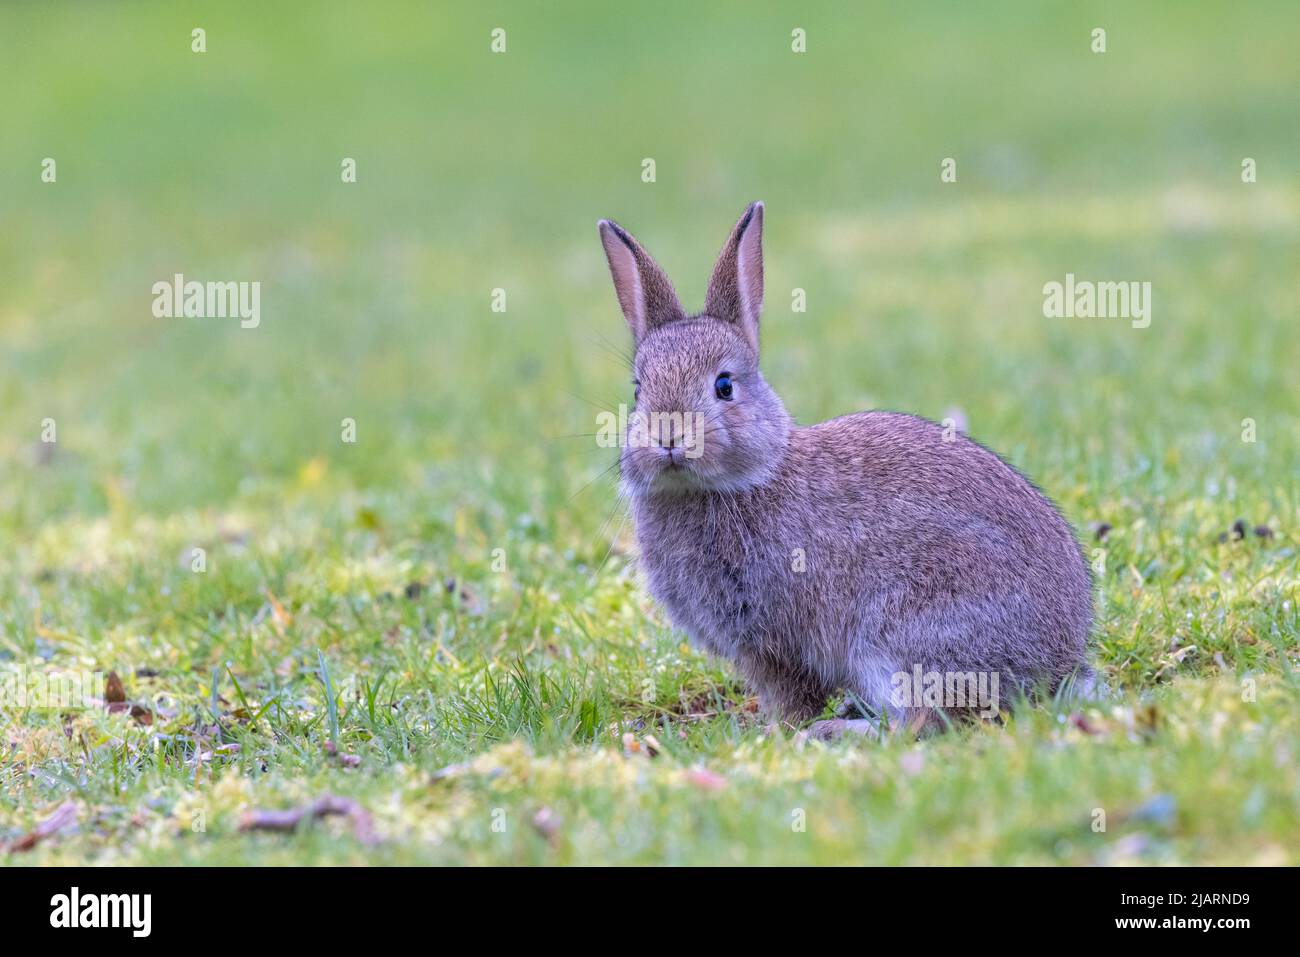 Jeune lapin européen [ Oryctolagus cuniculus ] se nourrissant sur les prairies, Royaume-Uni Banque D'Images